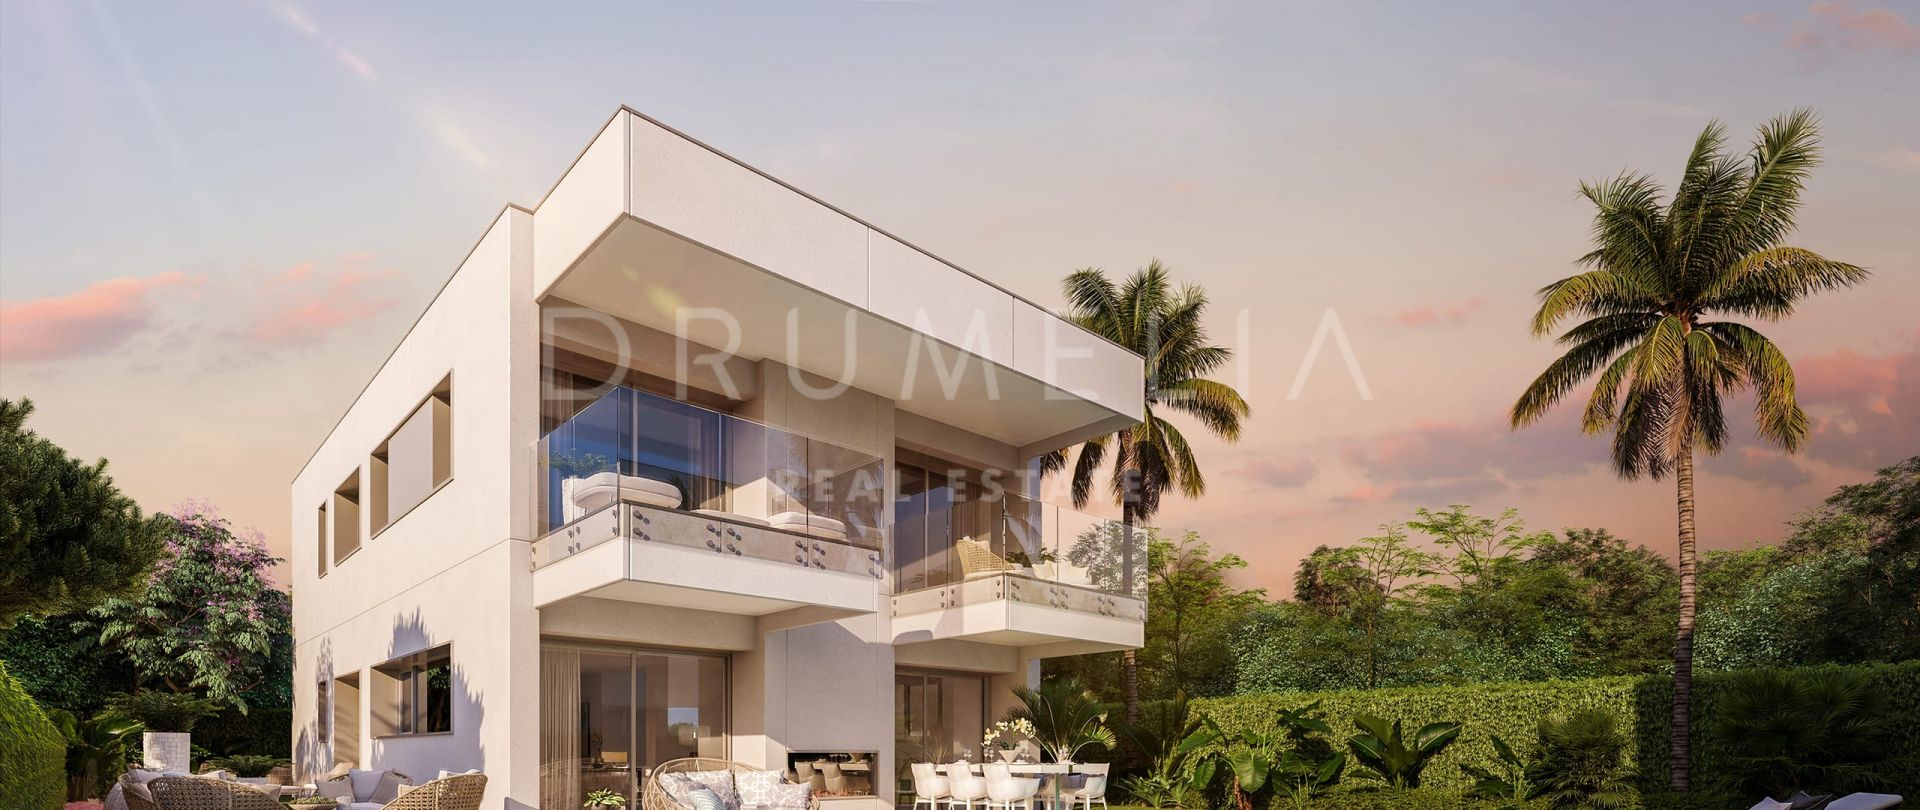 Magnifique et luxueuse villa contemporaine toute neuve, San Pedro Playa